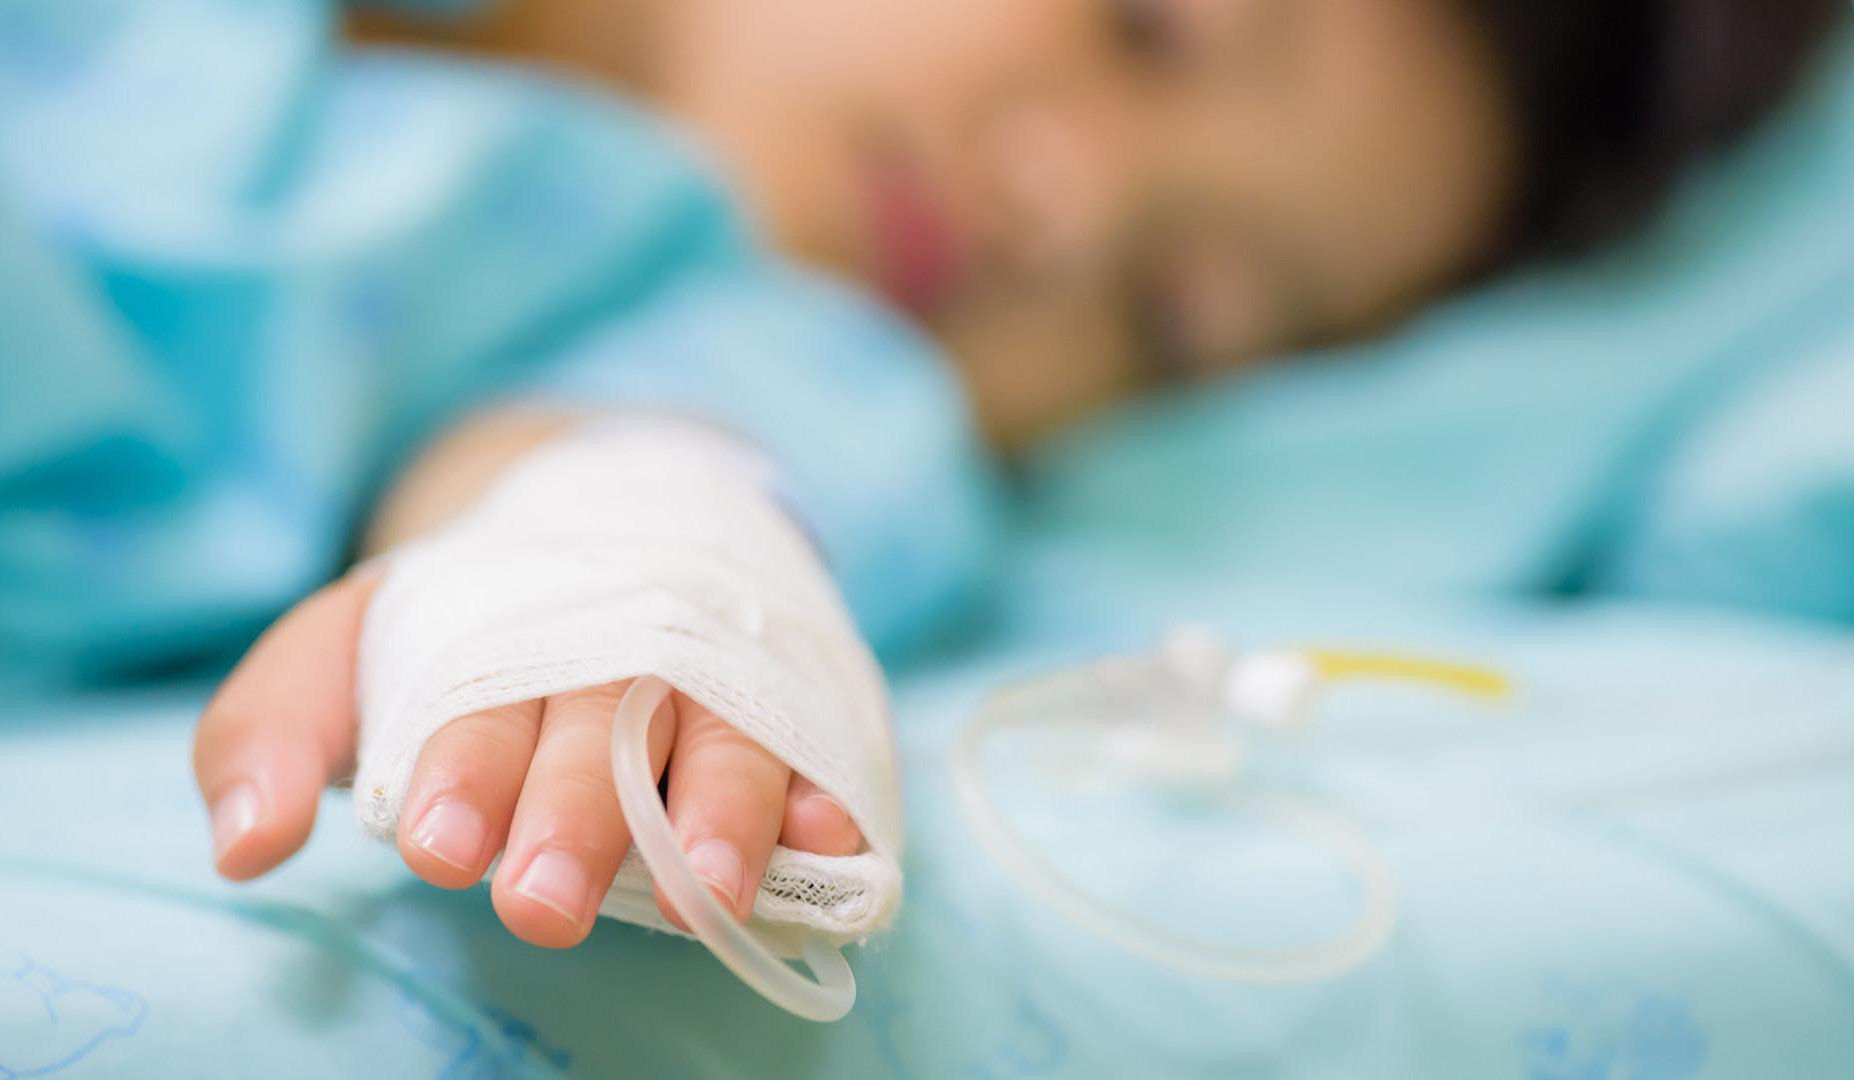 Արցախի մանկական հիվանդանոցի նորածնային և վերակենդանացման բաժանմունքներում գտնվում է 5 երեխա